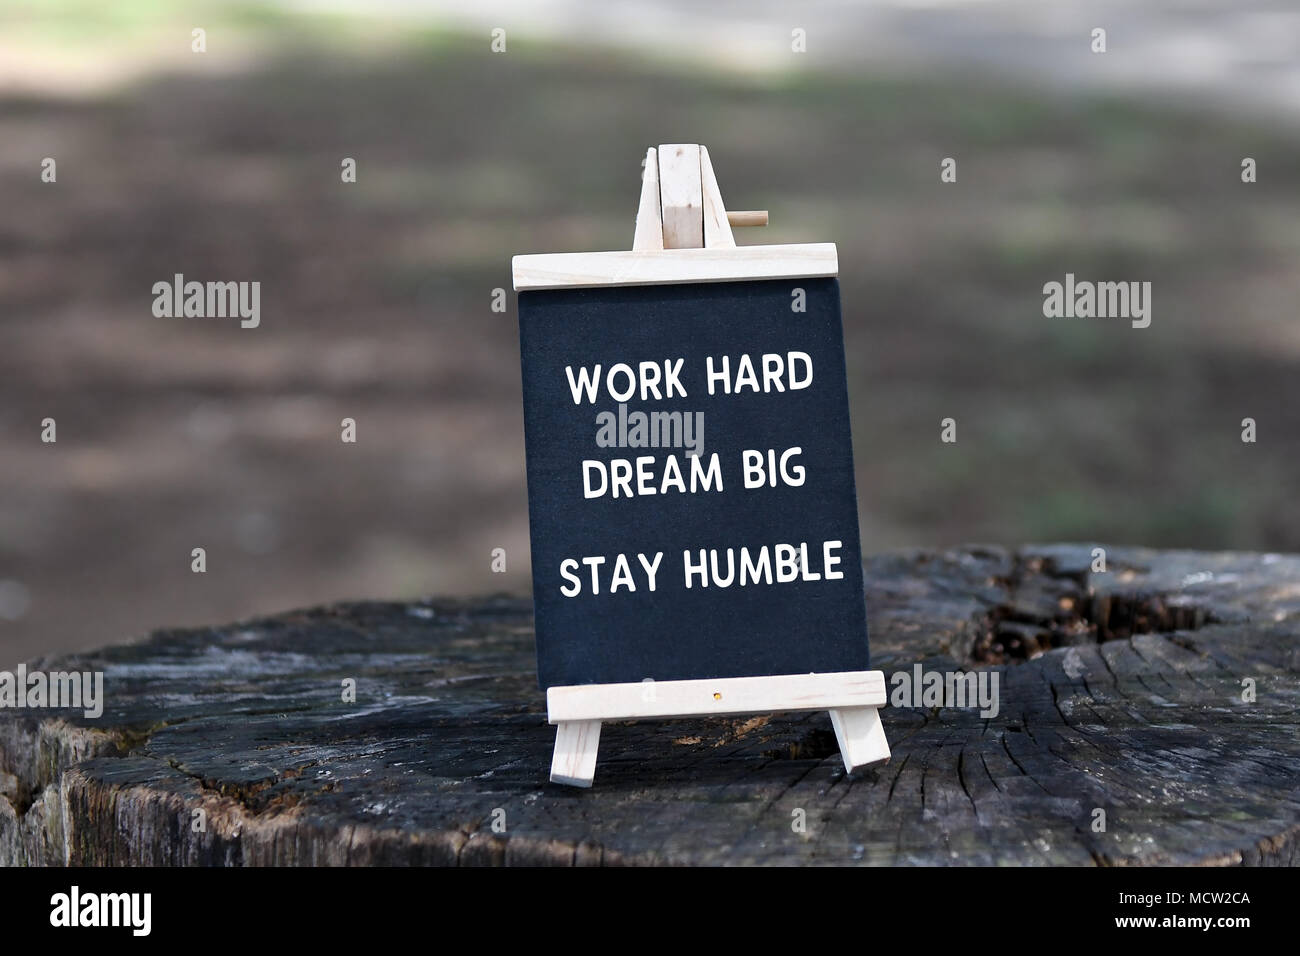 Cita inspiradora - Trabajar duro, soñar en grande, humilde, en junta de negro. Foto de stock